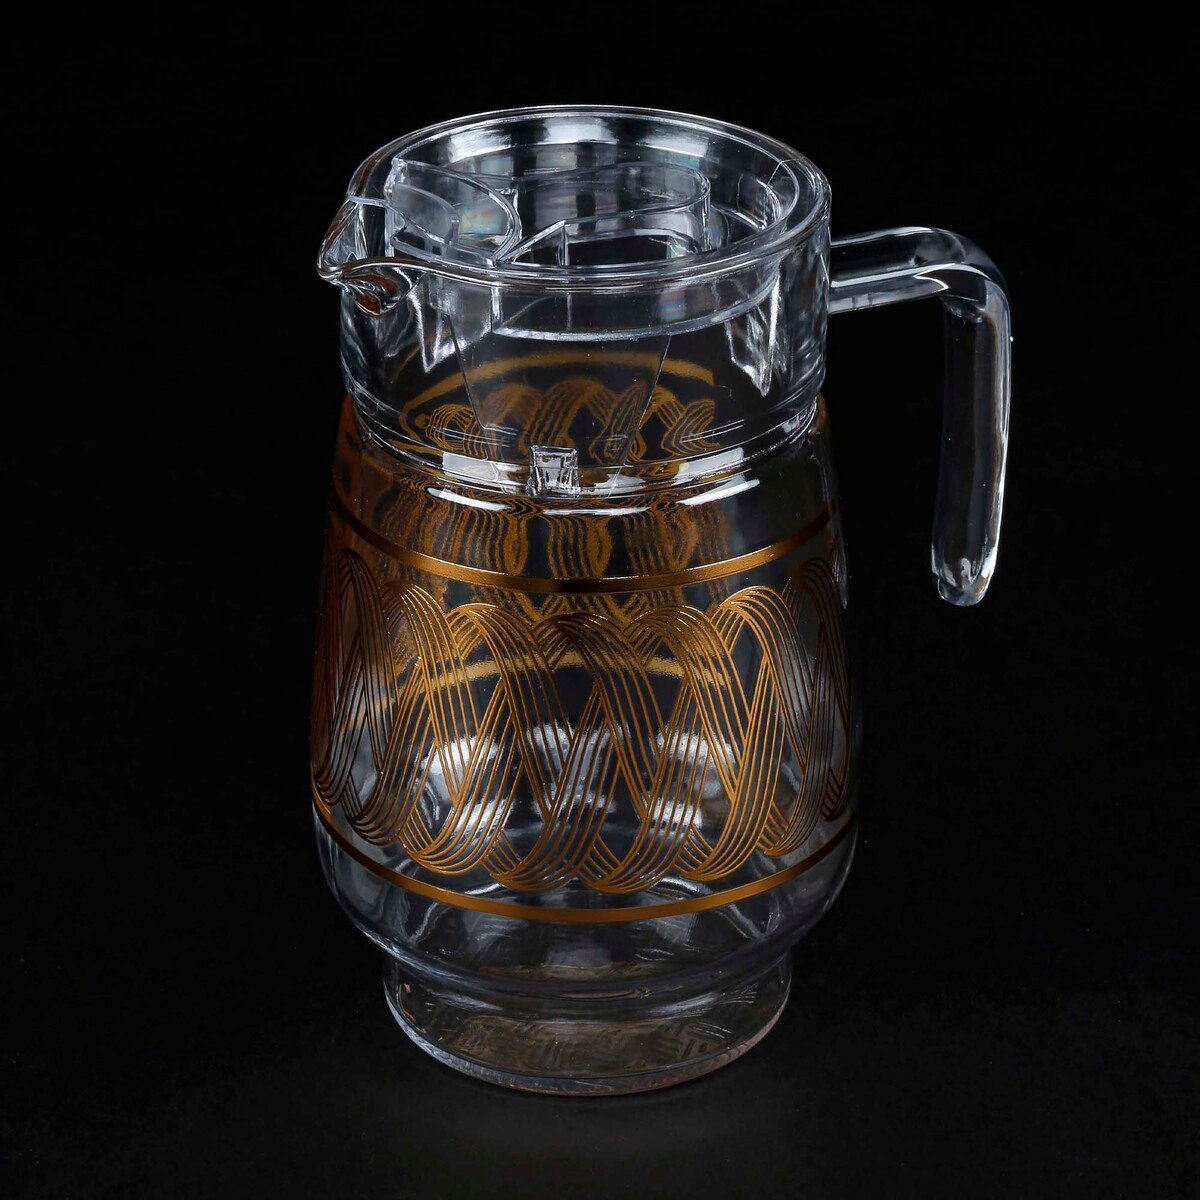 كريستال دروبز أبريق ماء زجاجي، بنقش ذهبي، P13005-M4